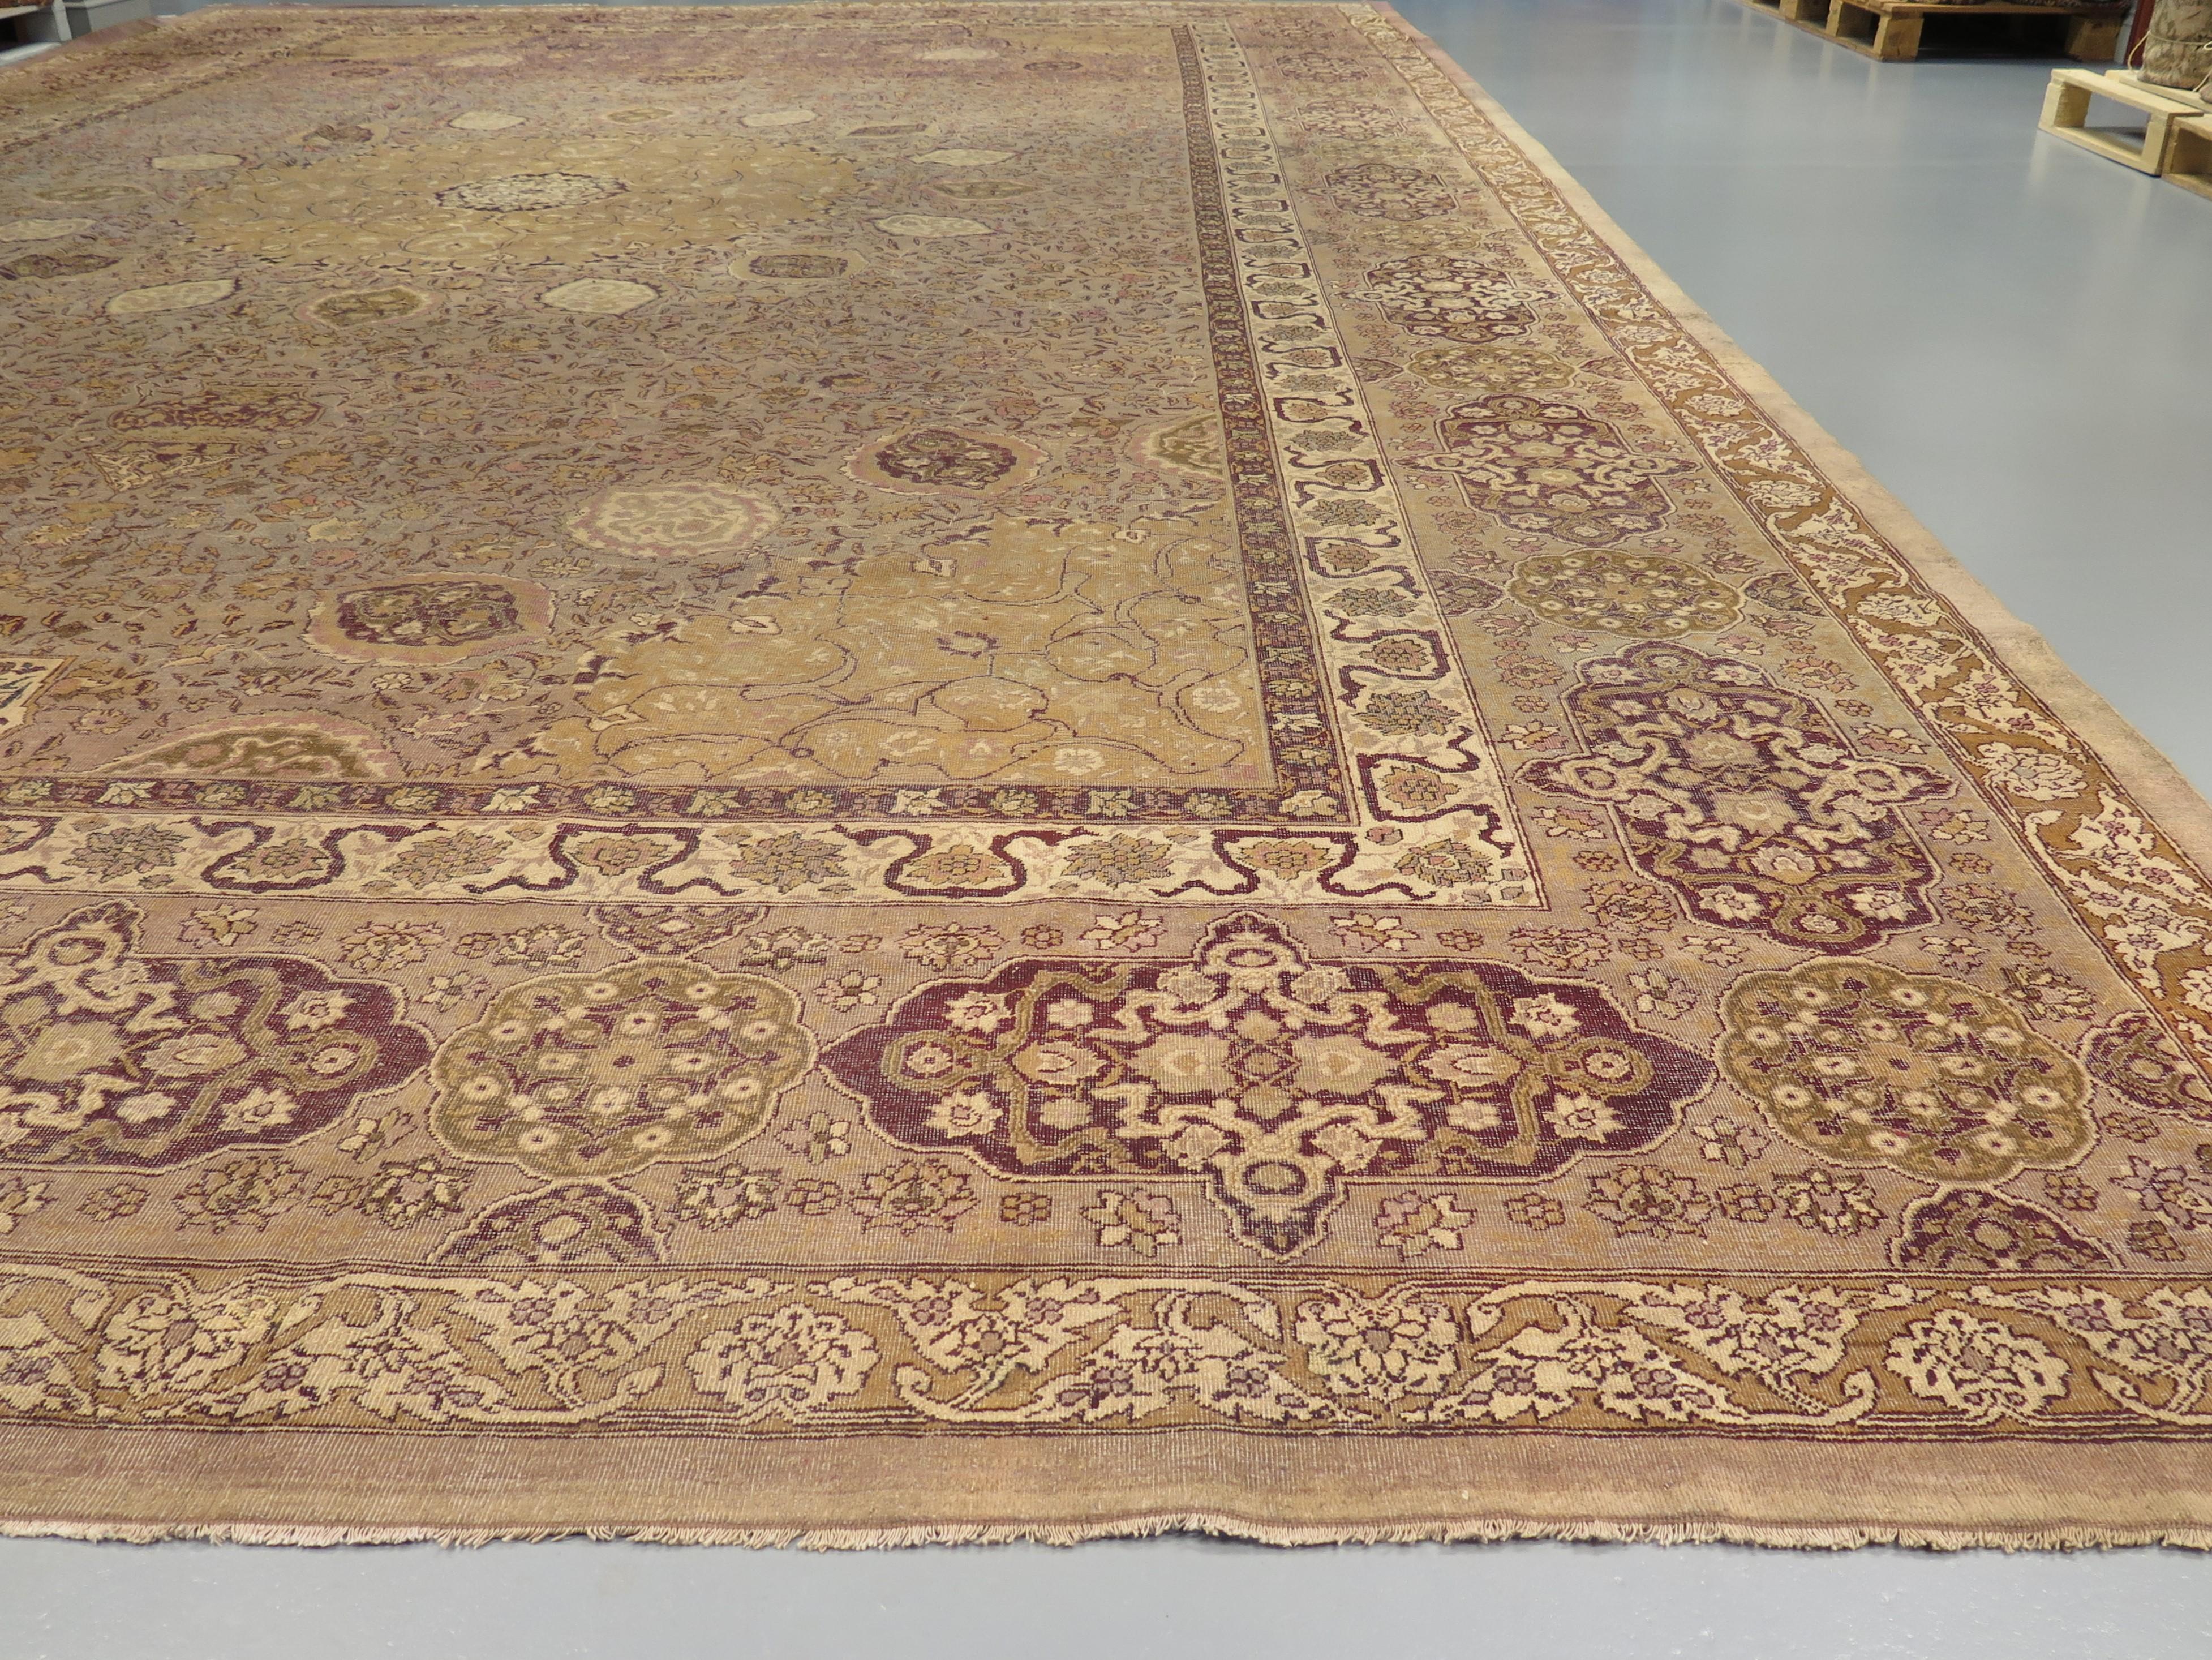 La création de tapis en Inde a une histoire vénérable, qui remonte à la période moghole du XVIe siècle, mais elle a connu une véritable renaissance à Amritsar à la fin du XIXe siècle, sous les auspices de la colonisation britannique. Les tapis